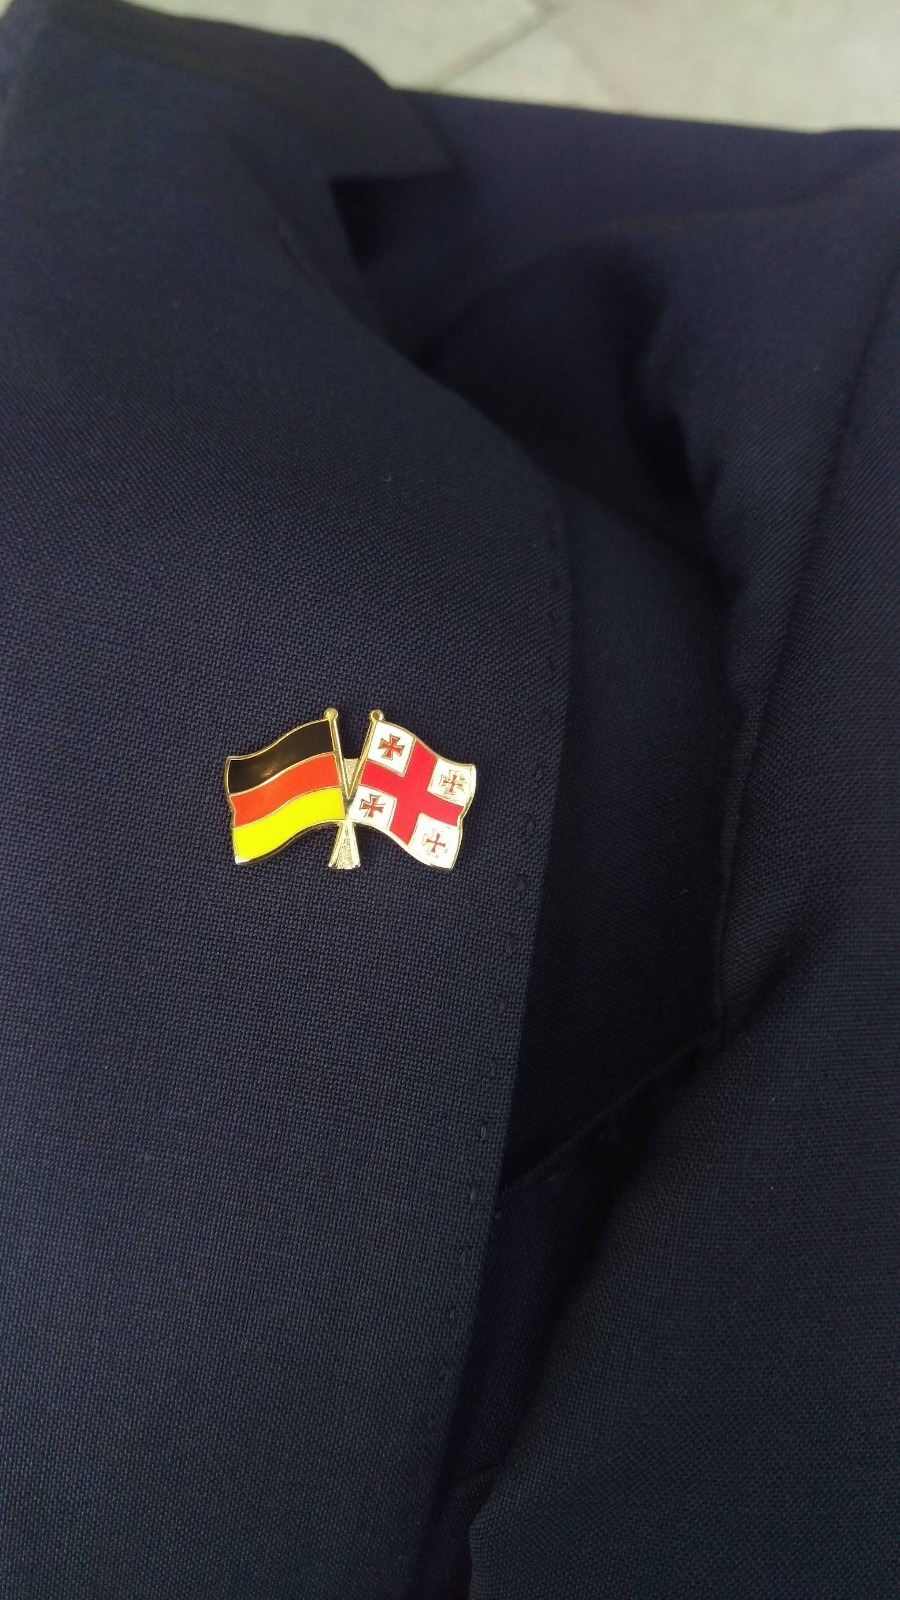 Bild eines Ansteckers auf dem Revers eines Anzugs mit den Flaggen von Georgien und Deutschland